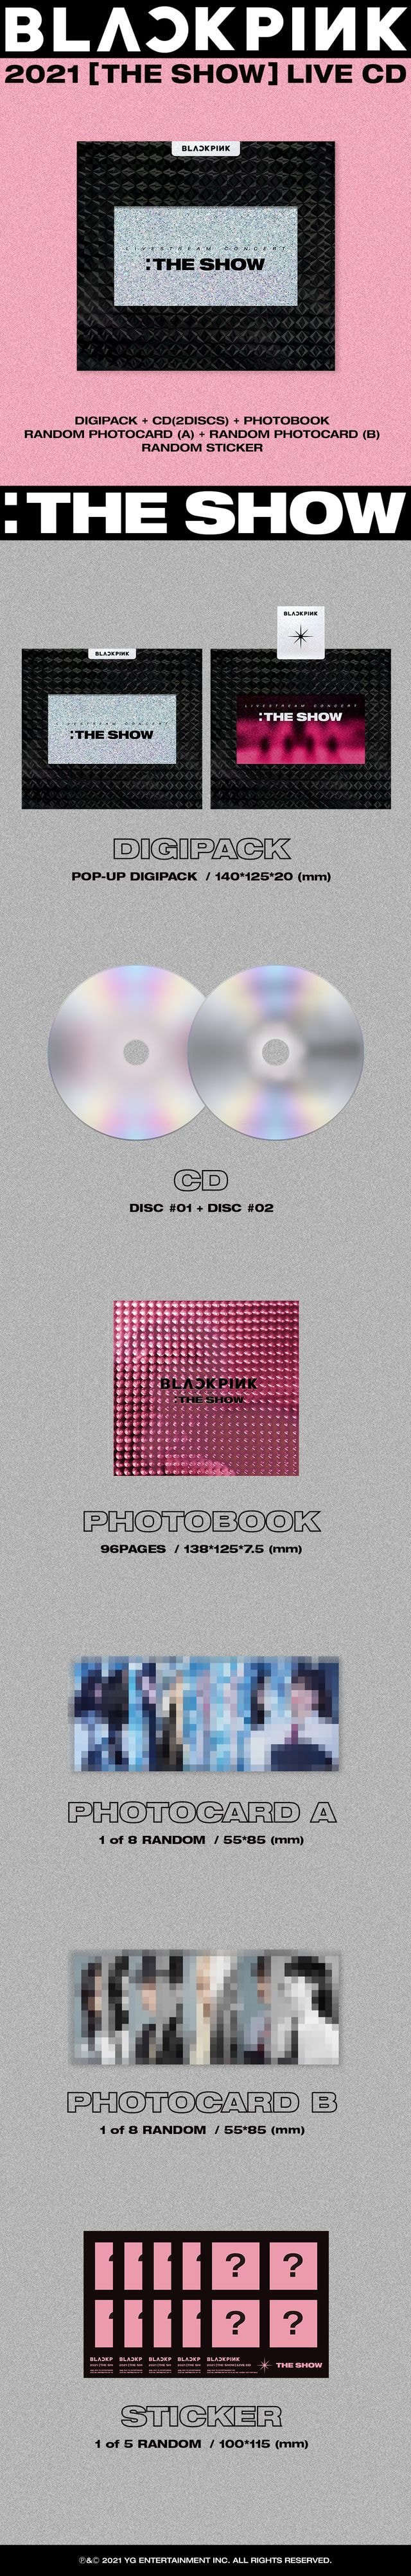 블랙핑크 BLACKPINK 2021 온라인 콘서트 [THE SHOW] LIVE CD 발매